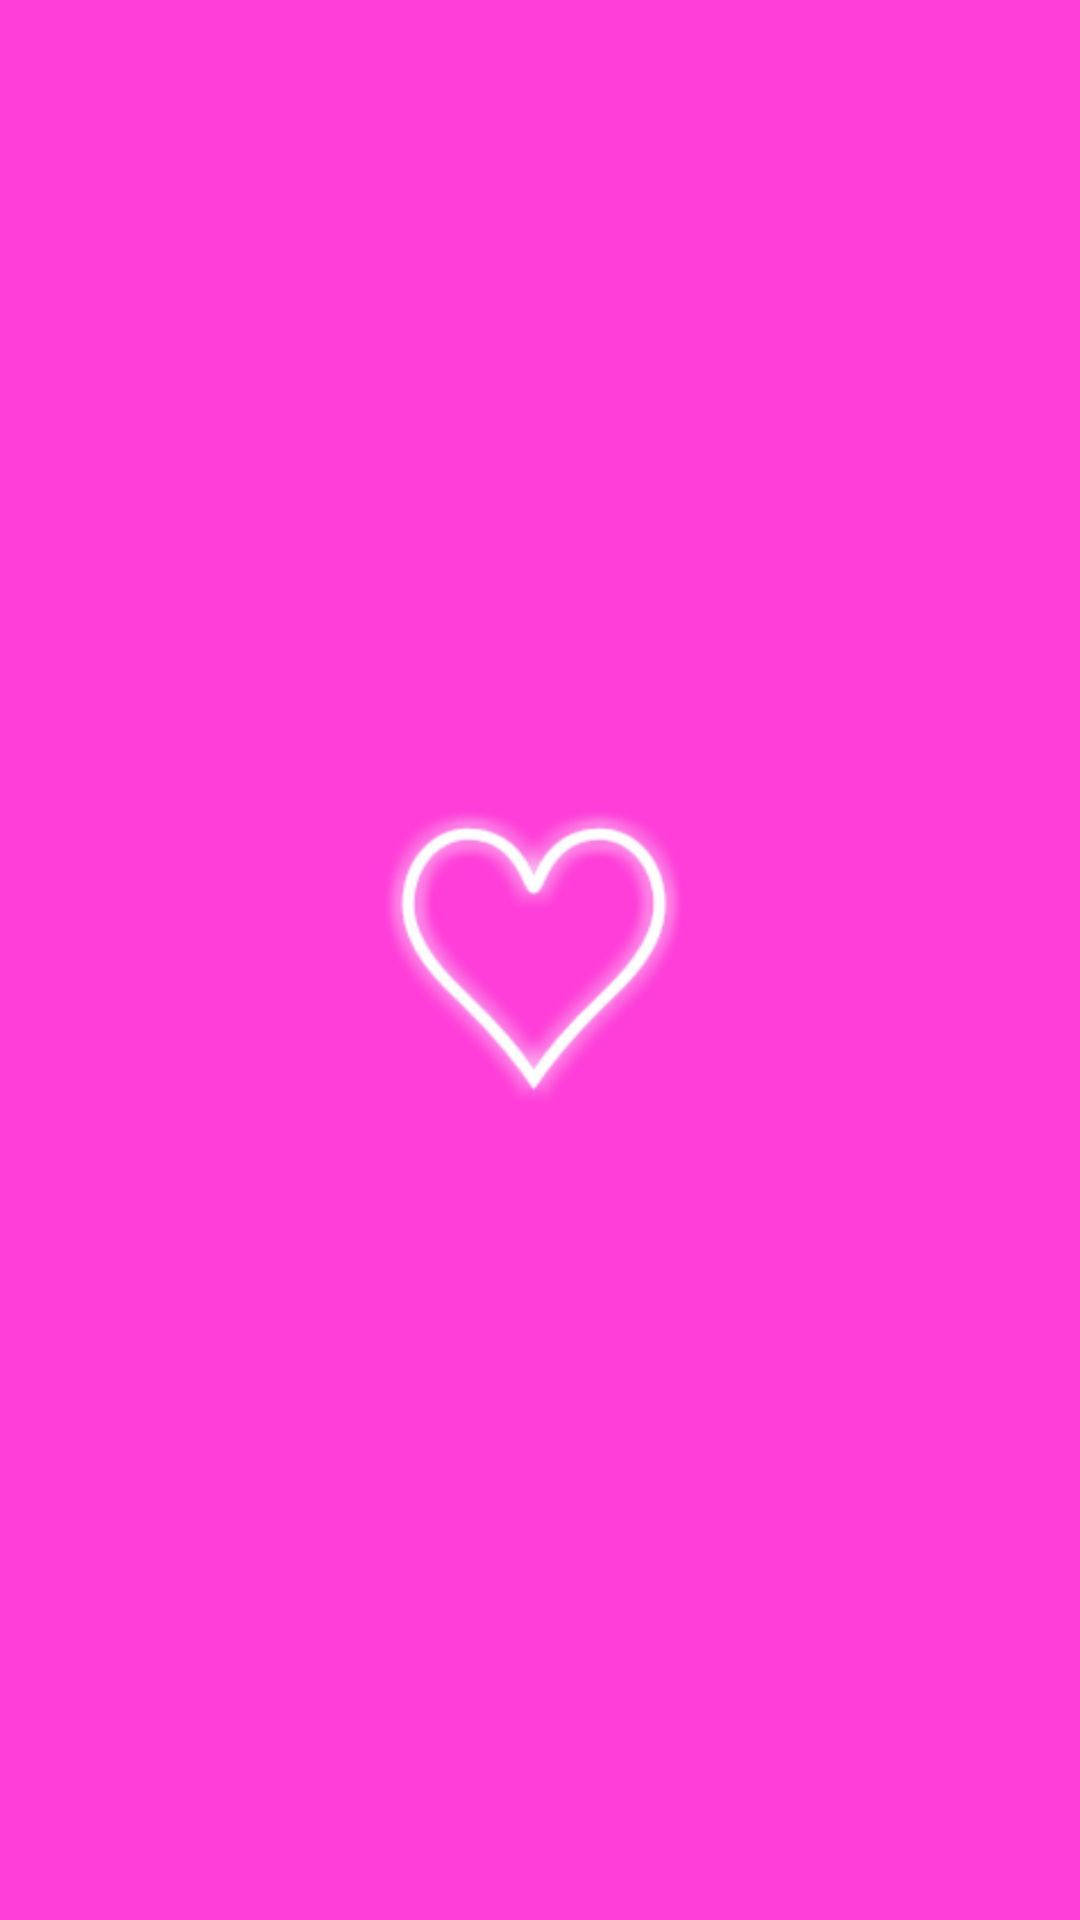 Heart Line Art In Neon Pink Wallpaper